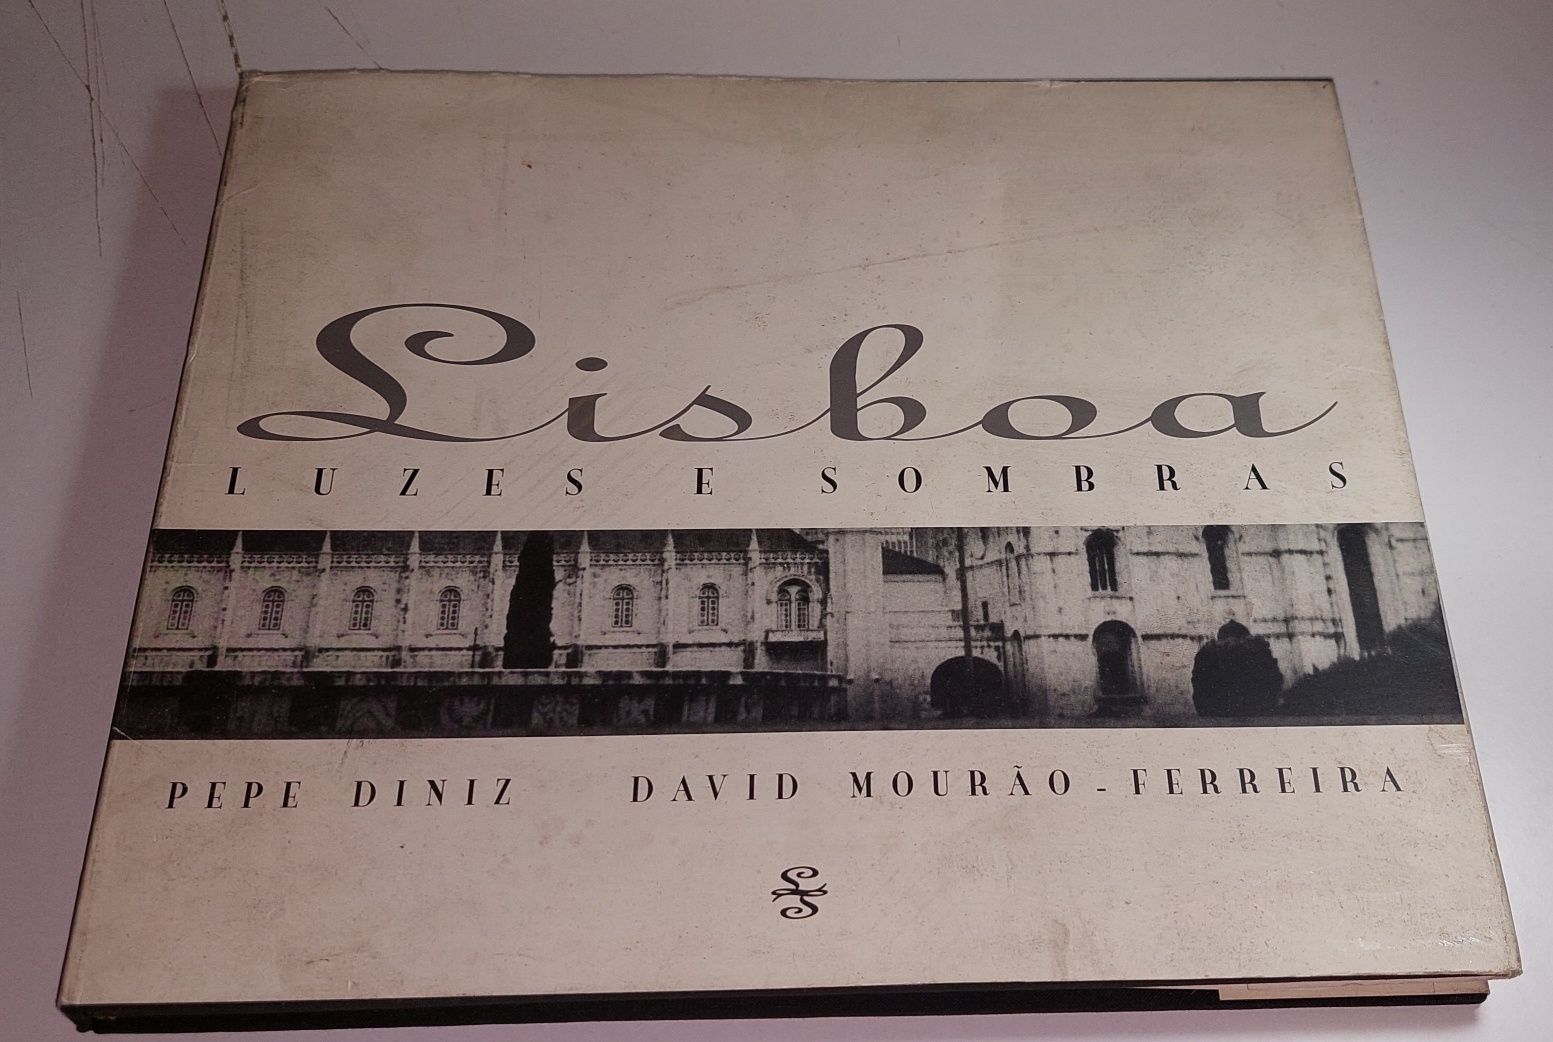 Lisboa, Luzes e Sombras - Pepe Diniz, David Mourão-Ferreira